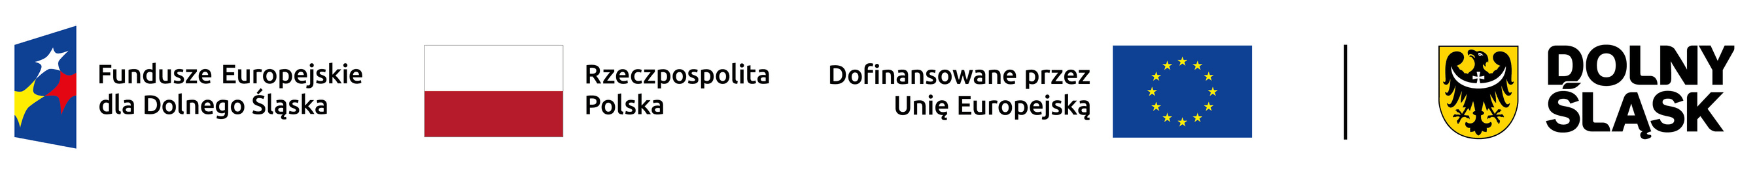 Logotypy projektu: znak funduszy europejskich, flaga RP, flaga Unii Europejskiej, herb Dolnego Śląska